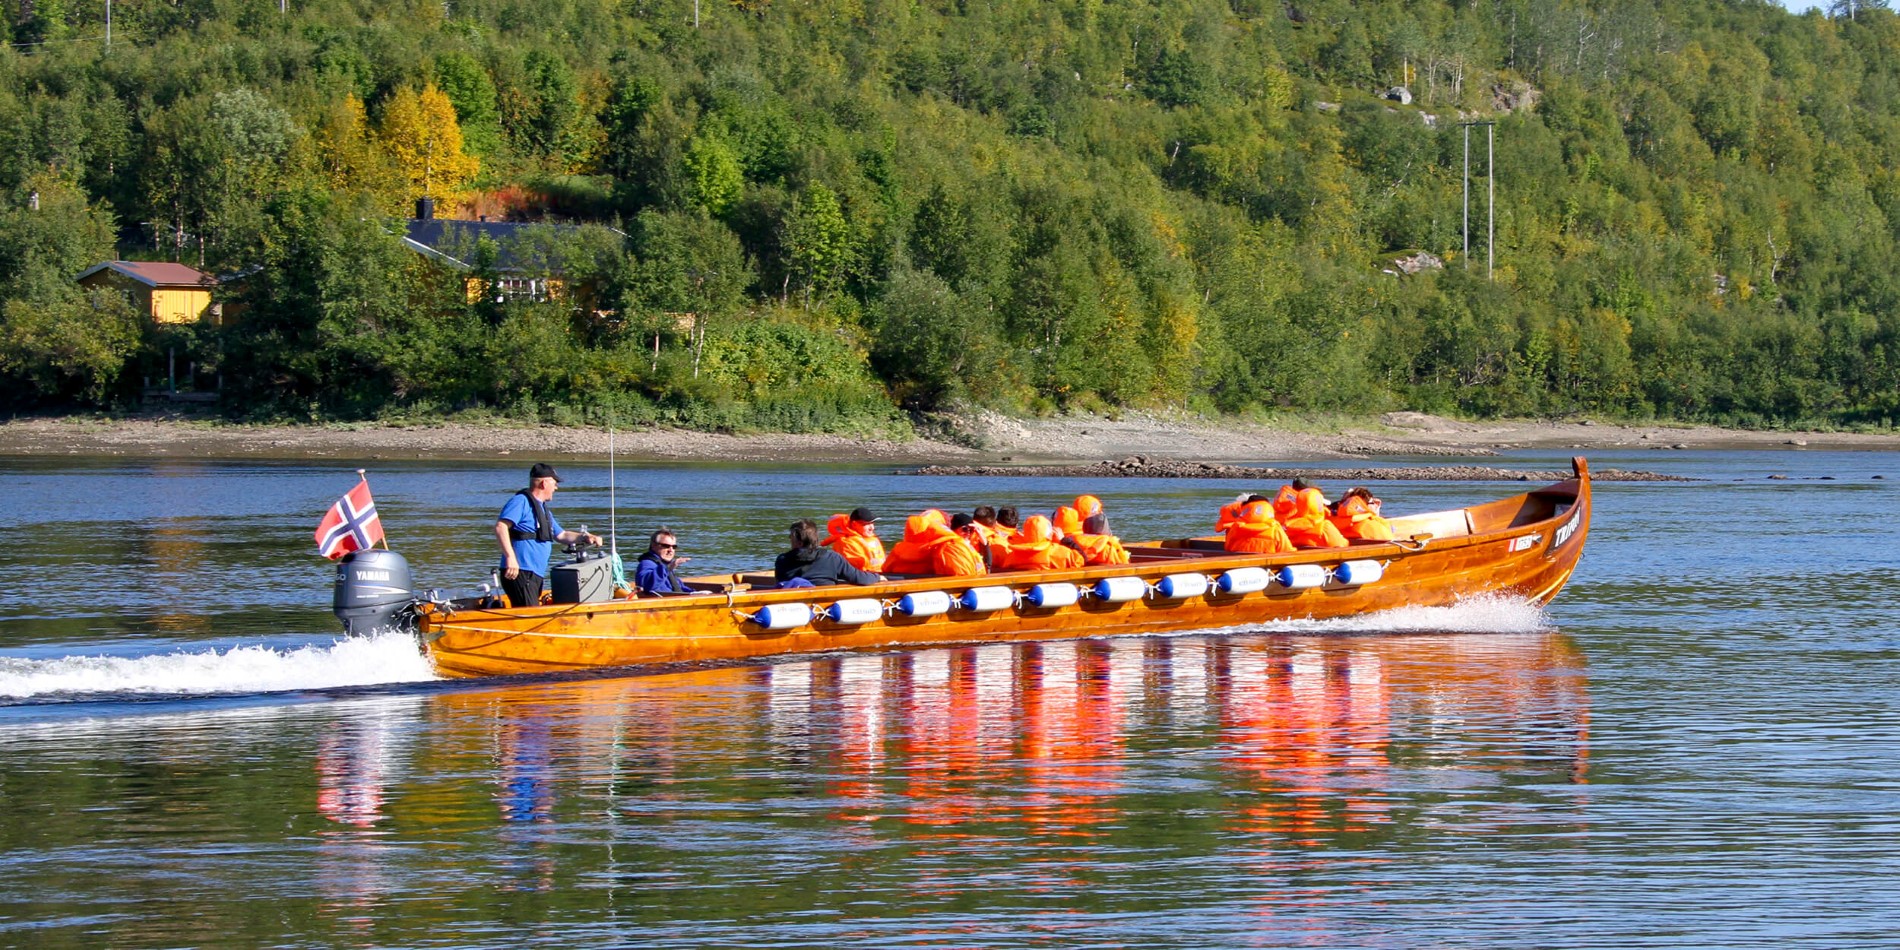 En gruppe mennesker, der rider på bagsiden af en båd i vandet